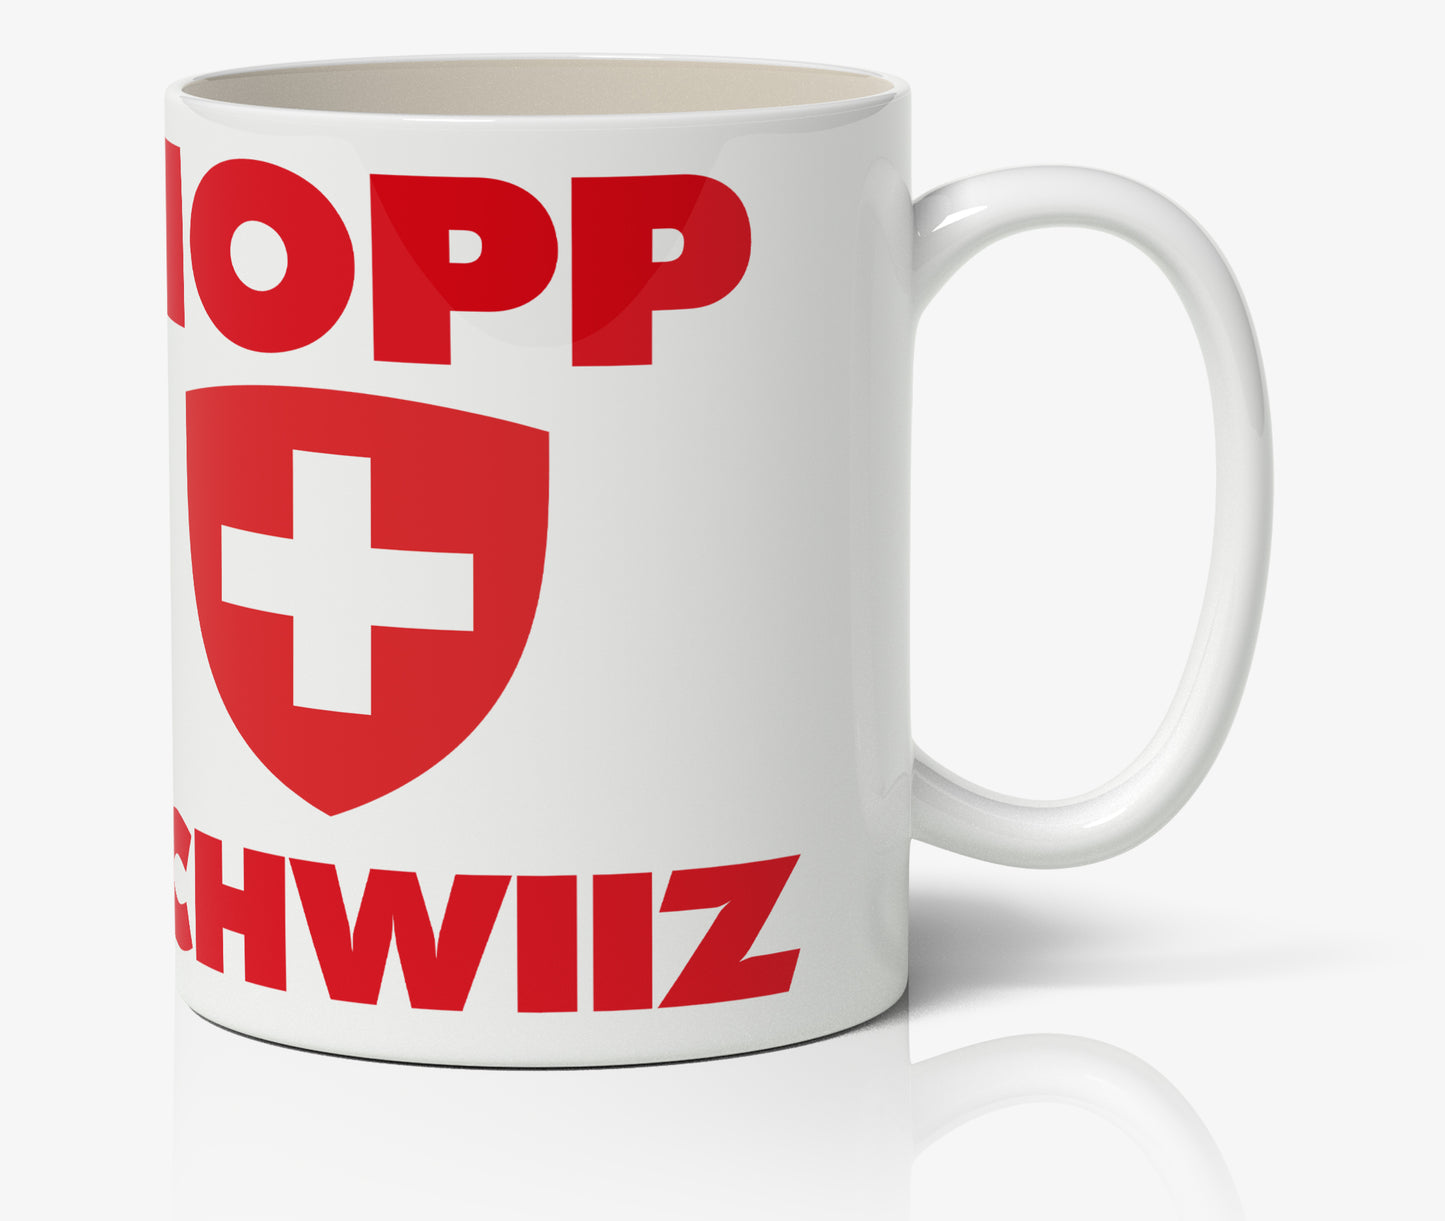 Hopp Schwiiz Cup 1 